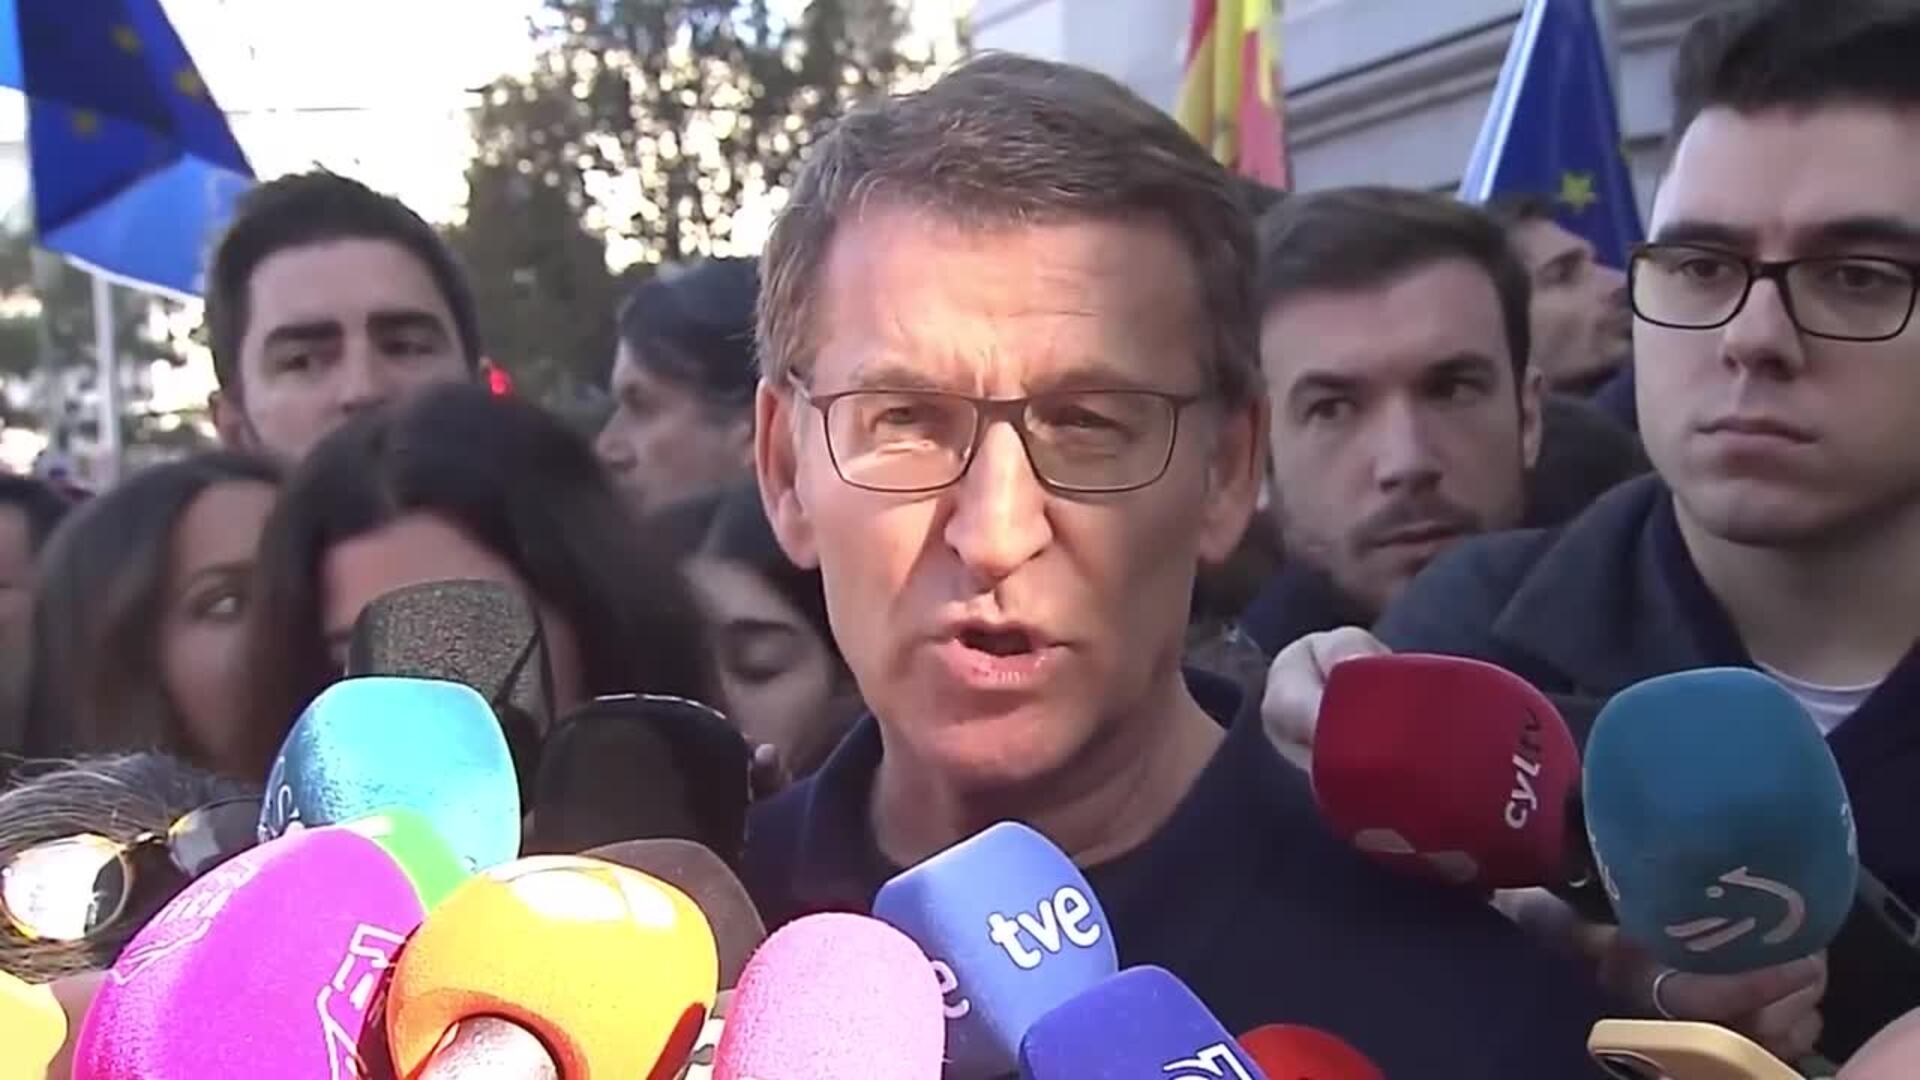 Feijóo exige Sánchez que "no levante muros" entre españoles y pide "no tener miedo"